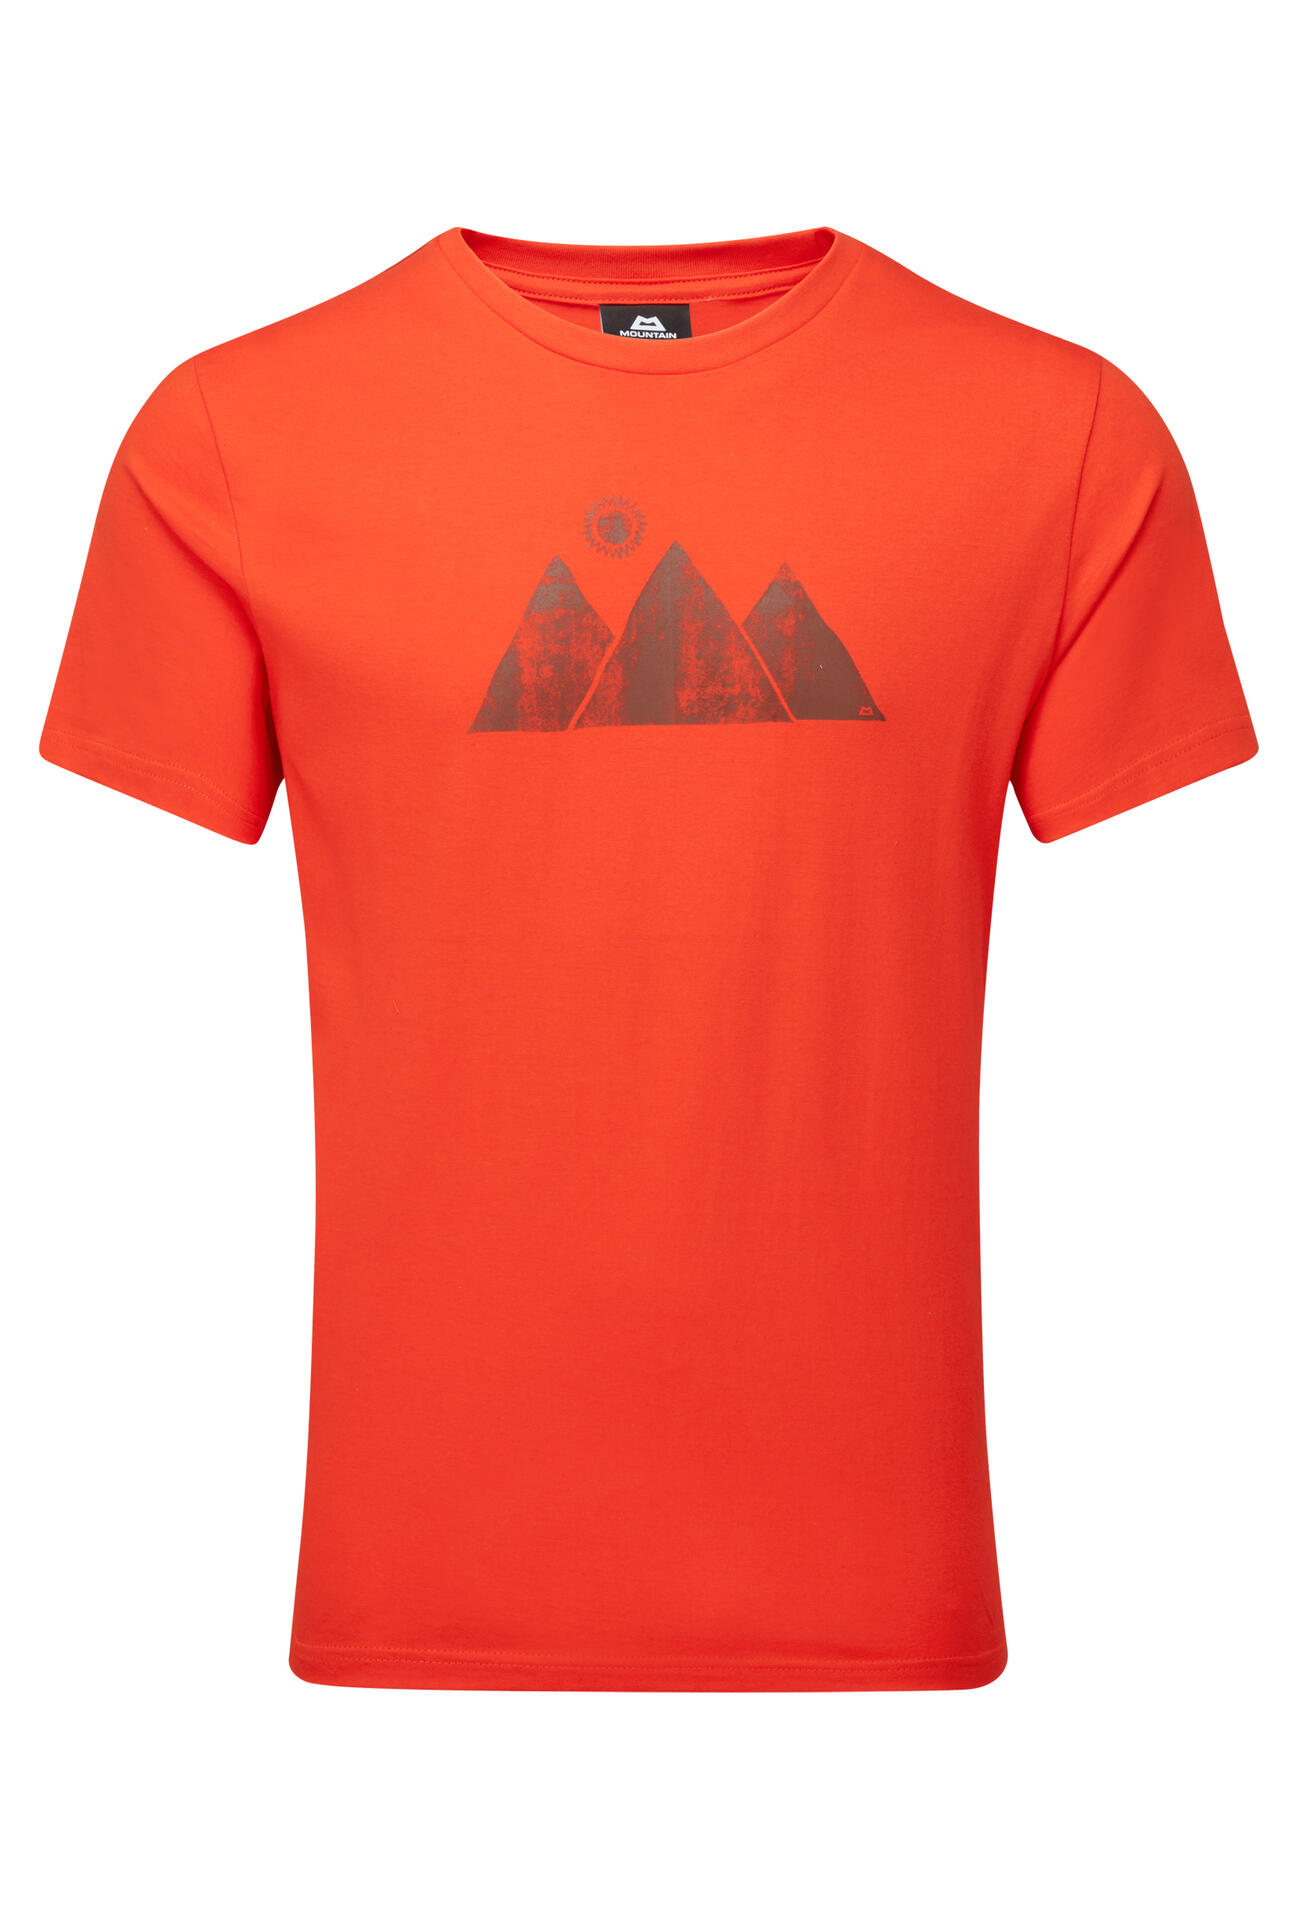 Mountain Equipment Mountain Sun Tee Men'S Barva: Cardinal Orange, Velikost: XXL